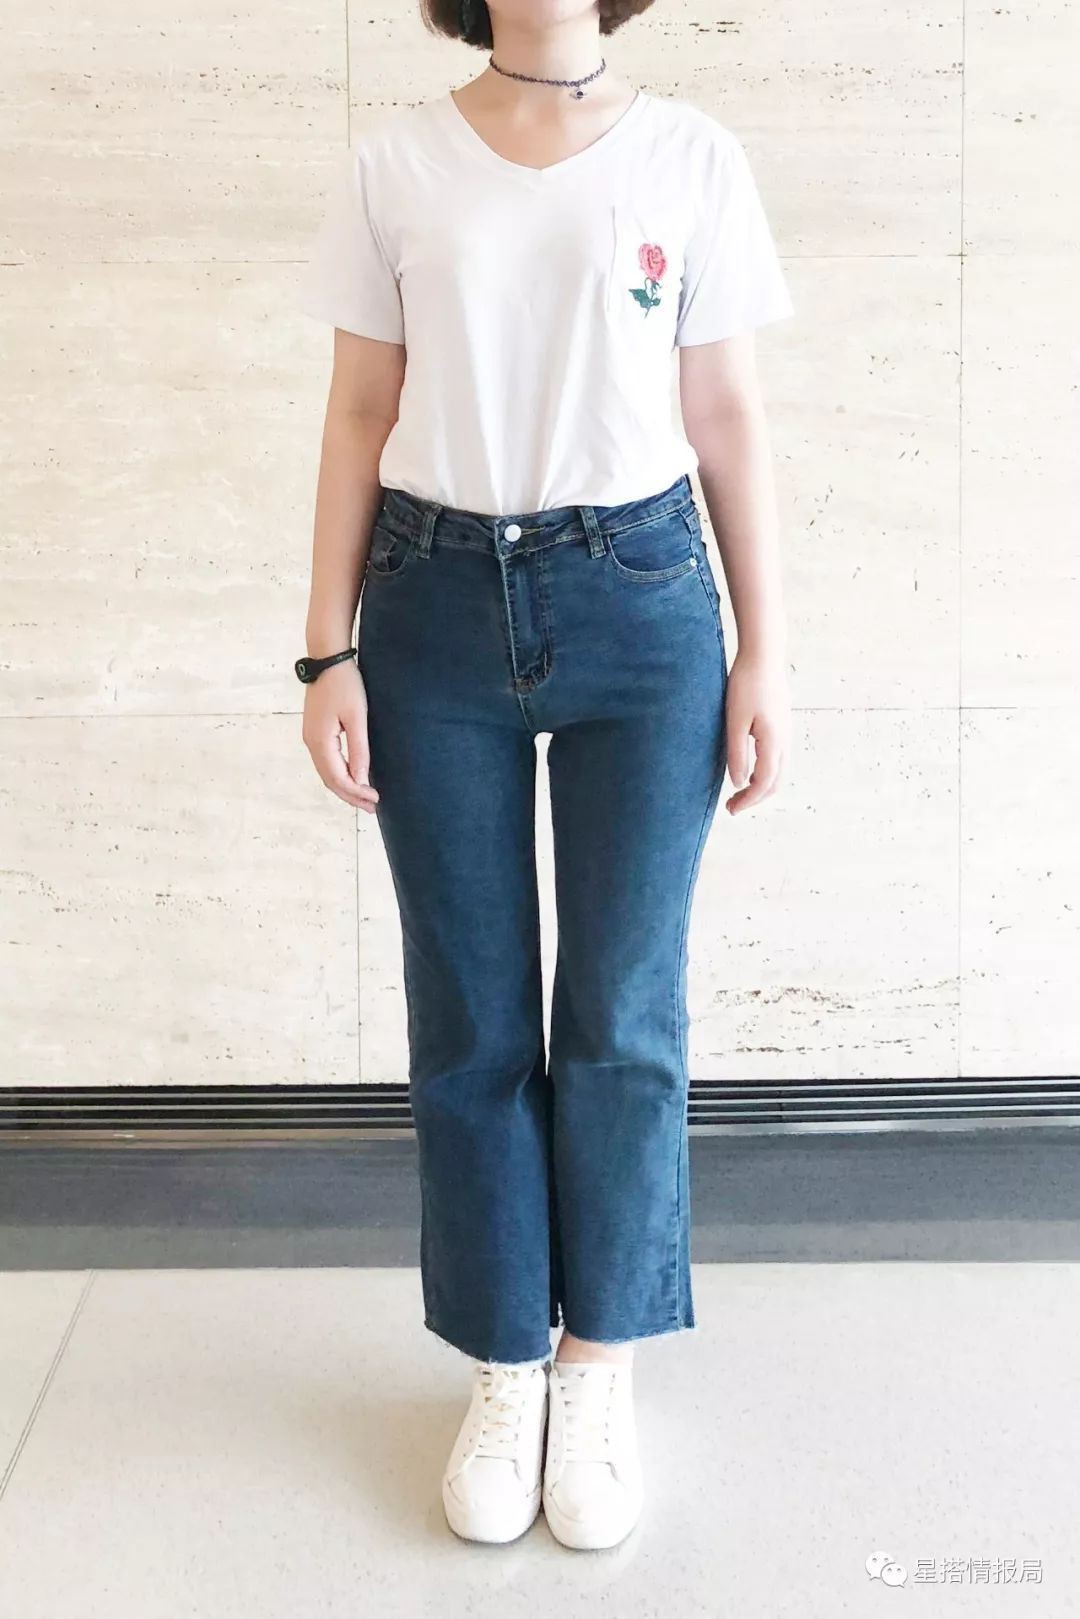 Đại diện các chị em mặc thử 8 loại quần jeans phổ biến, cô nàng này đã tìm ra loại tôn chân nịnh dáng nhất - Ảnh 11.